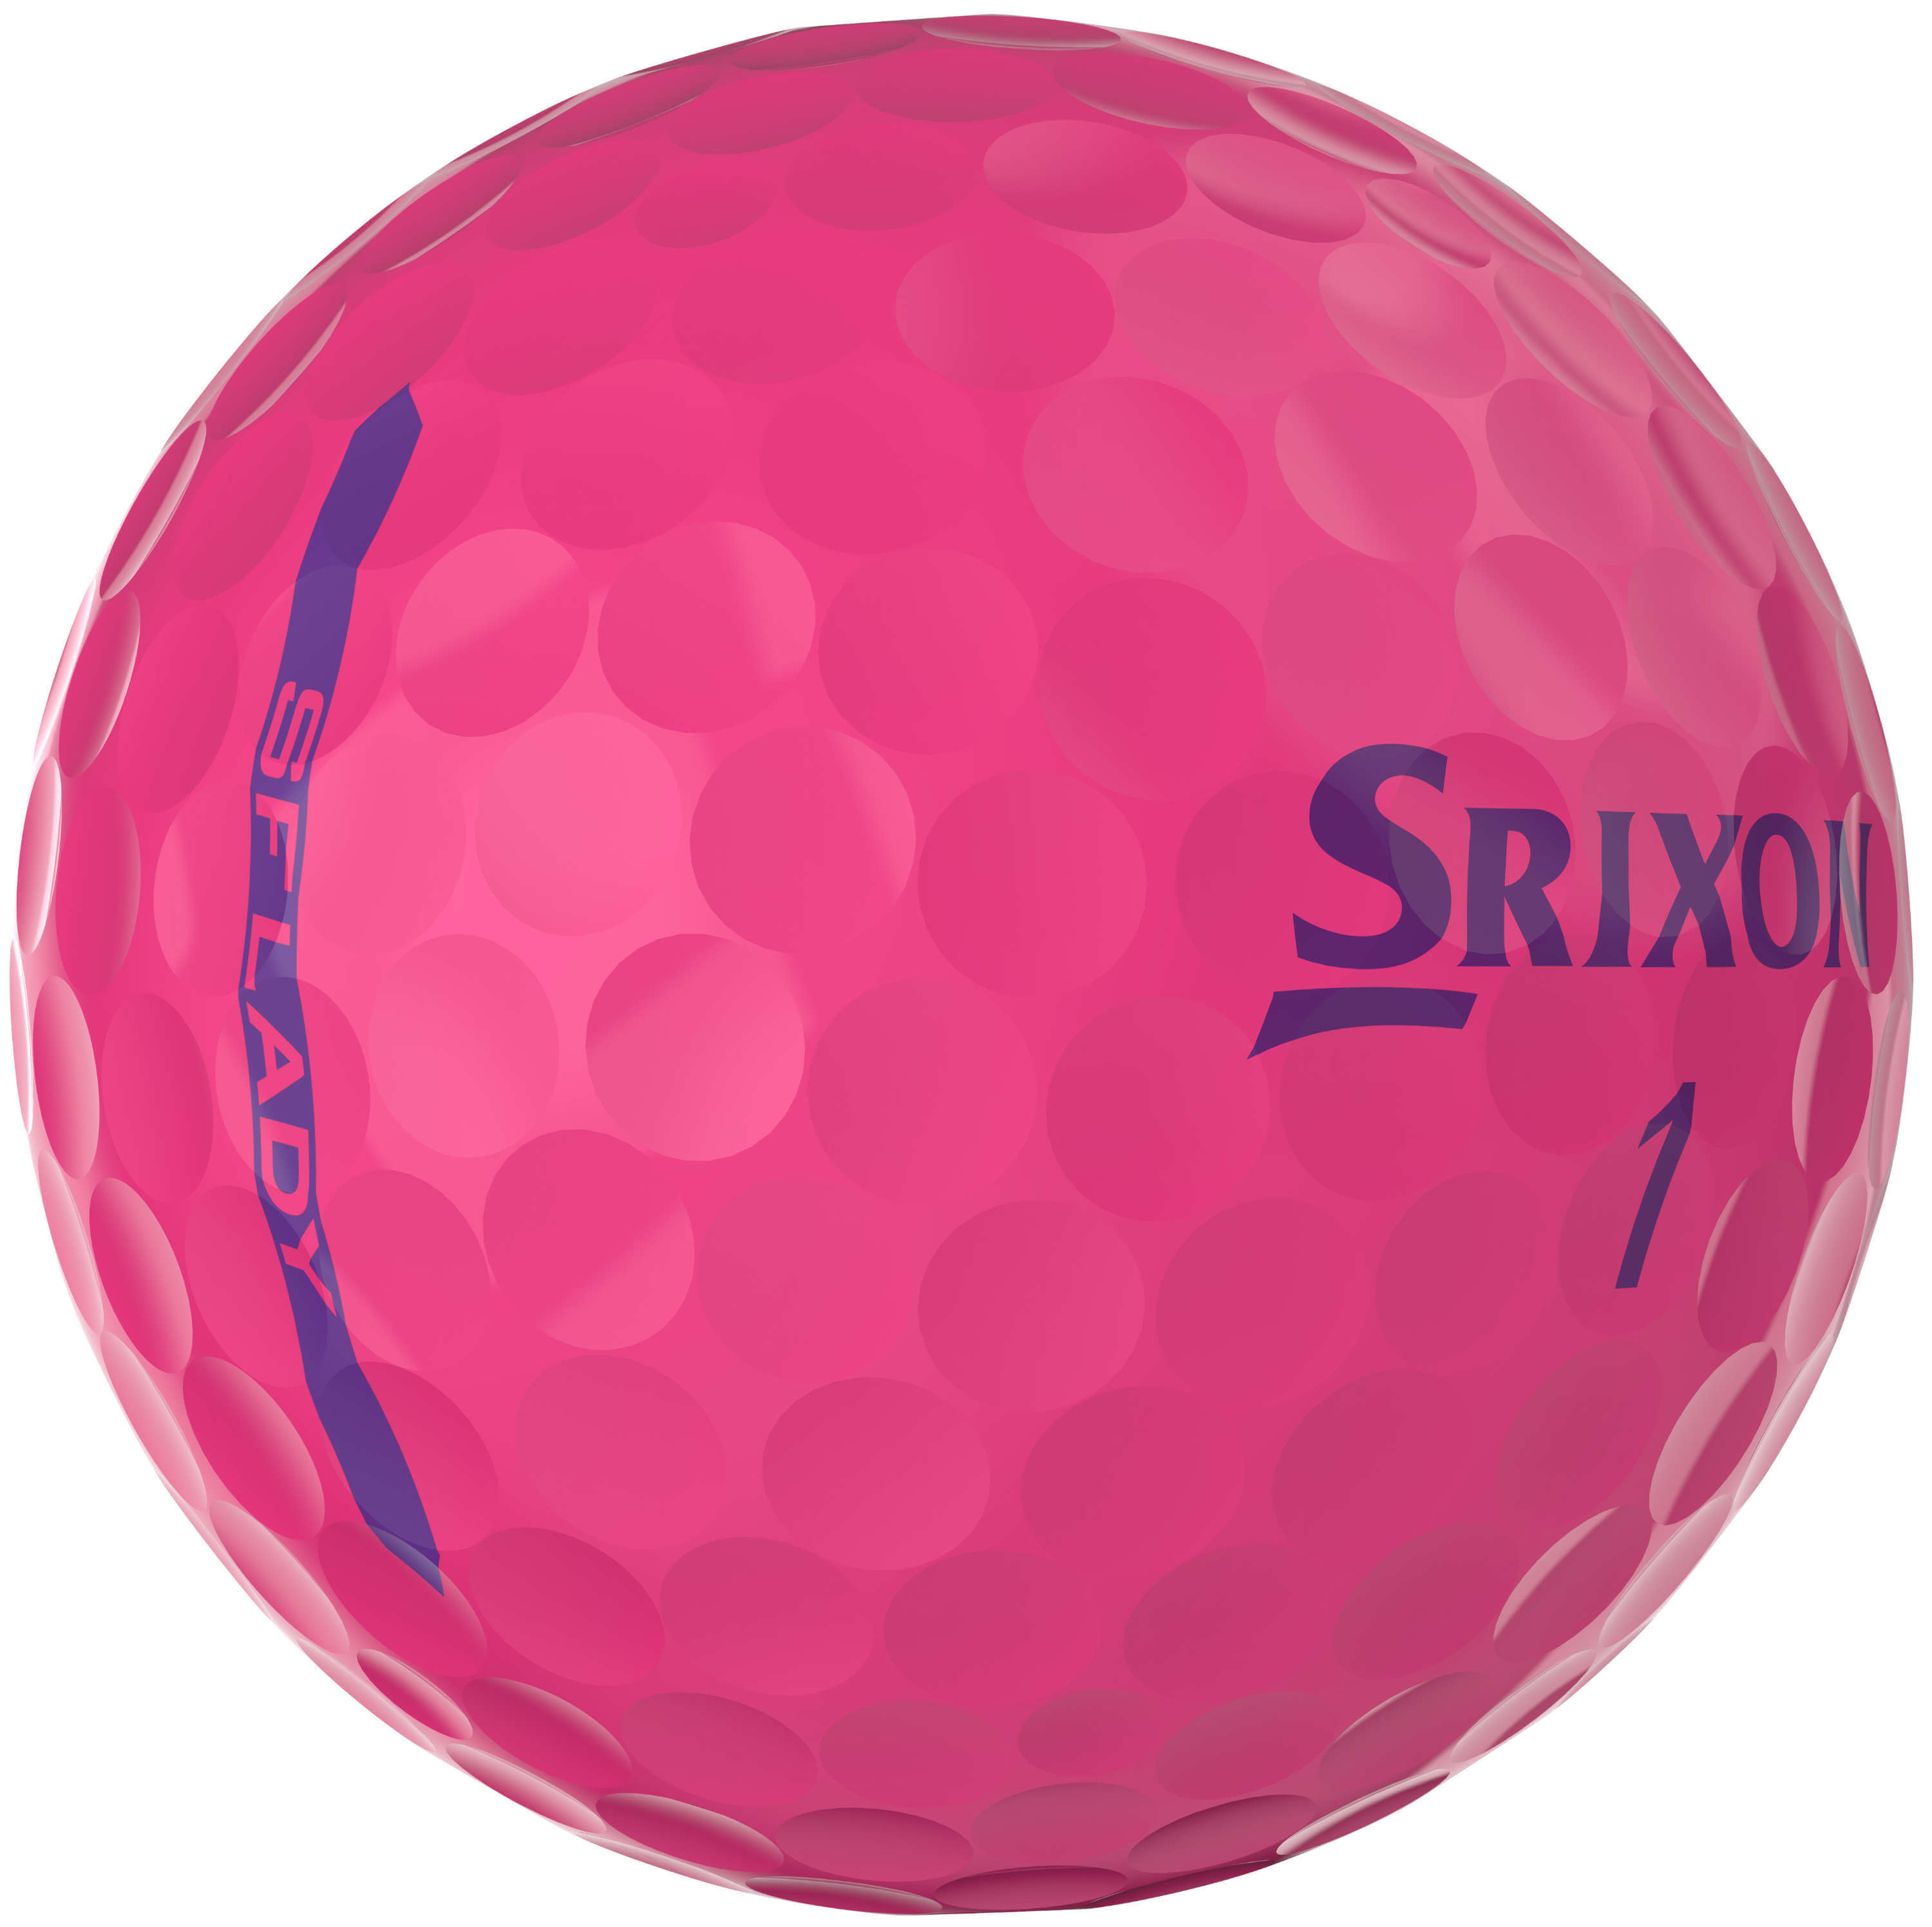 Srixon Soft Feel Lady Golfbälle, Pink